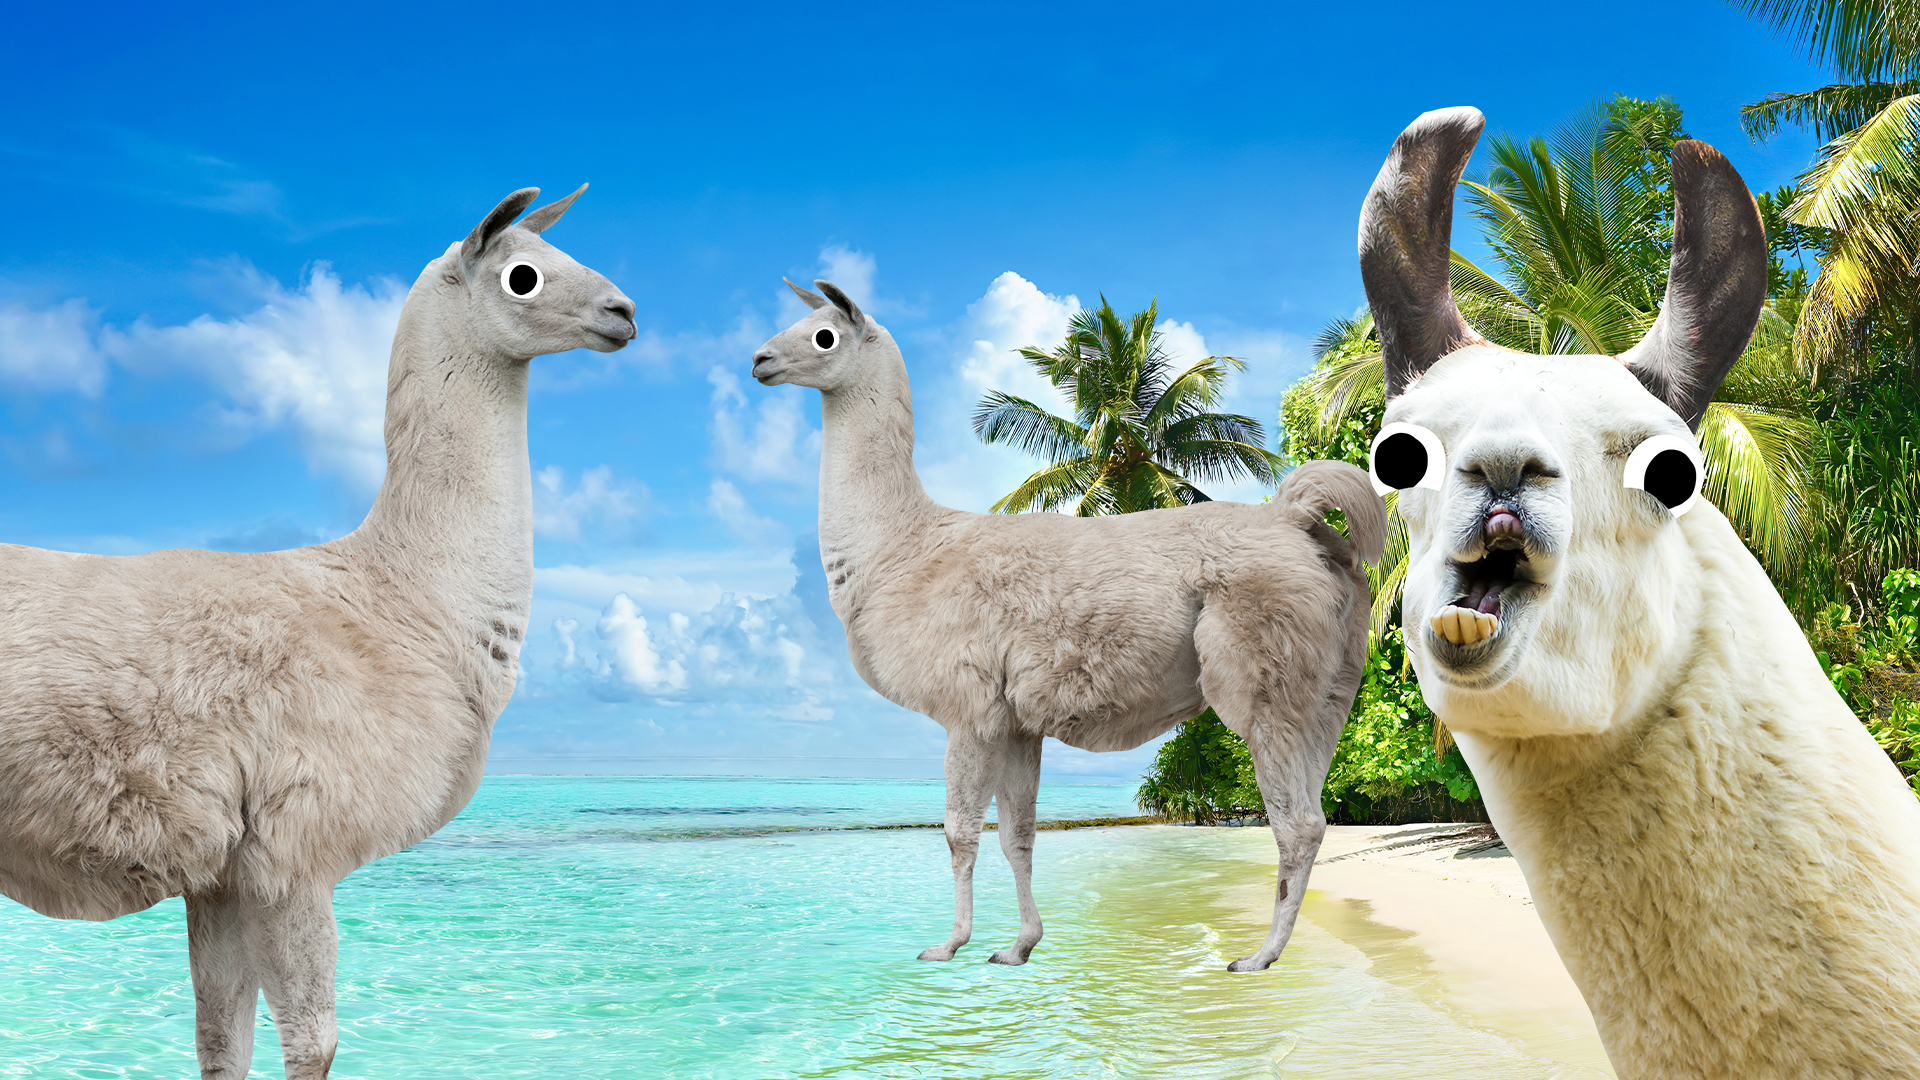 Some llamas on a tropical beach